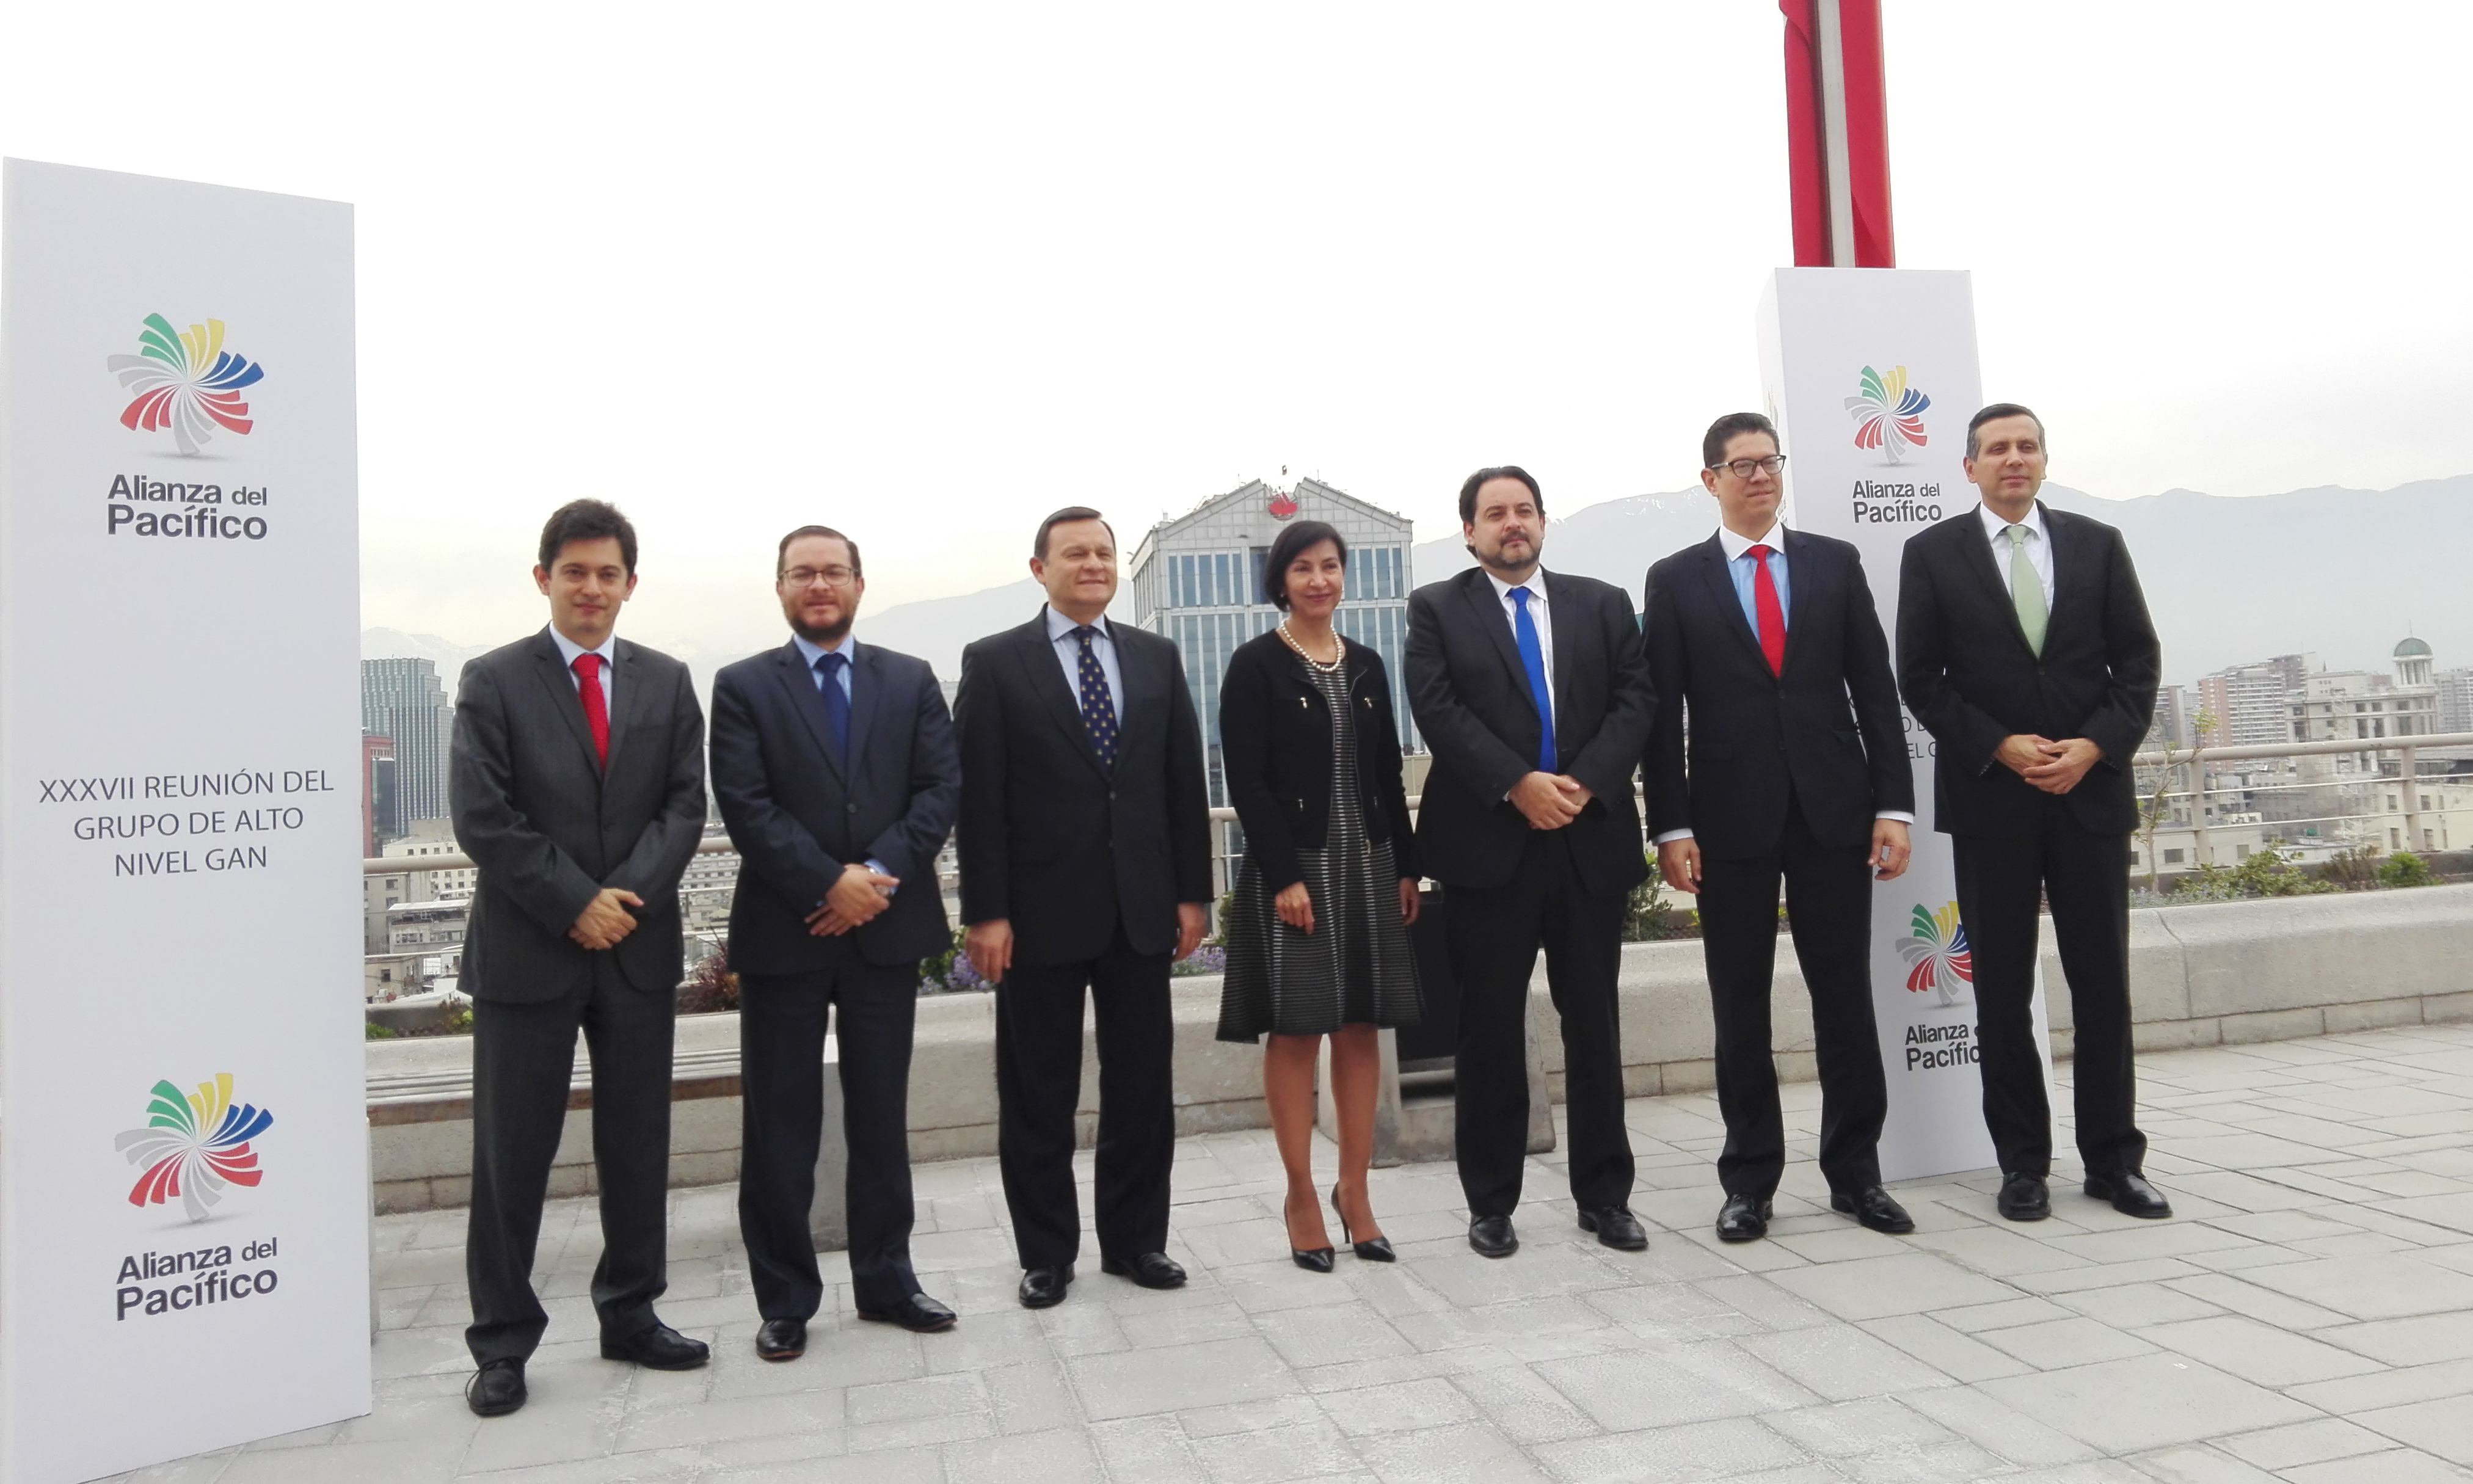 El Viceministro de Asuntos Multilaterales, Francisco Echeverri, en compañía del Viceministro de Comercio Exterior, Javier Gamboa, participó en la XXXVII Reunión del Grupo de Alto Nivel (GAN) de la Alianza del Pacífico, en Santiago de Chile. 